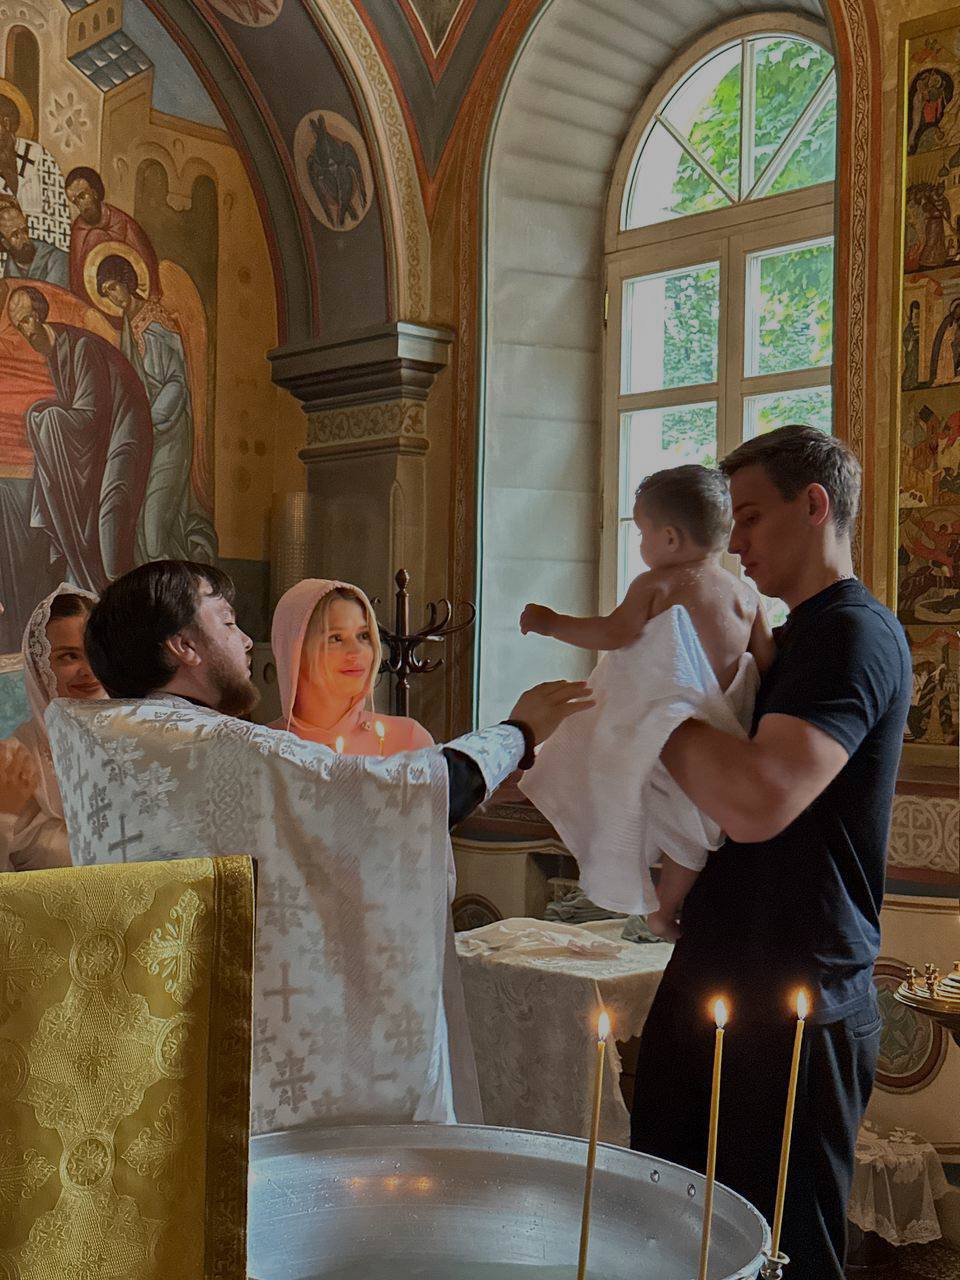 Тим Дмитриевич принял Святое крещение